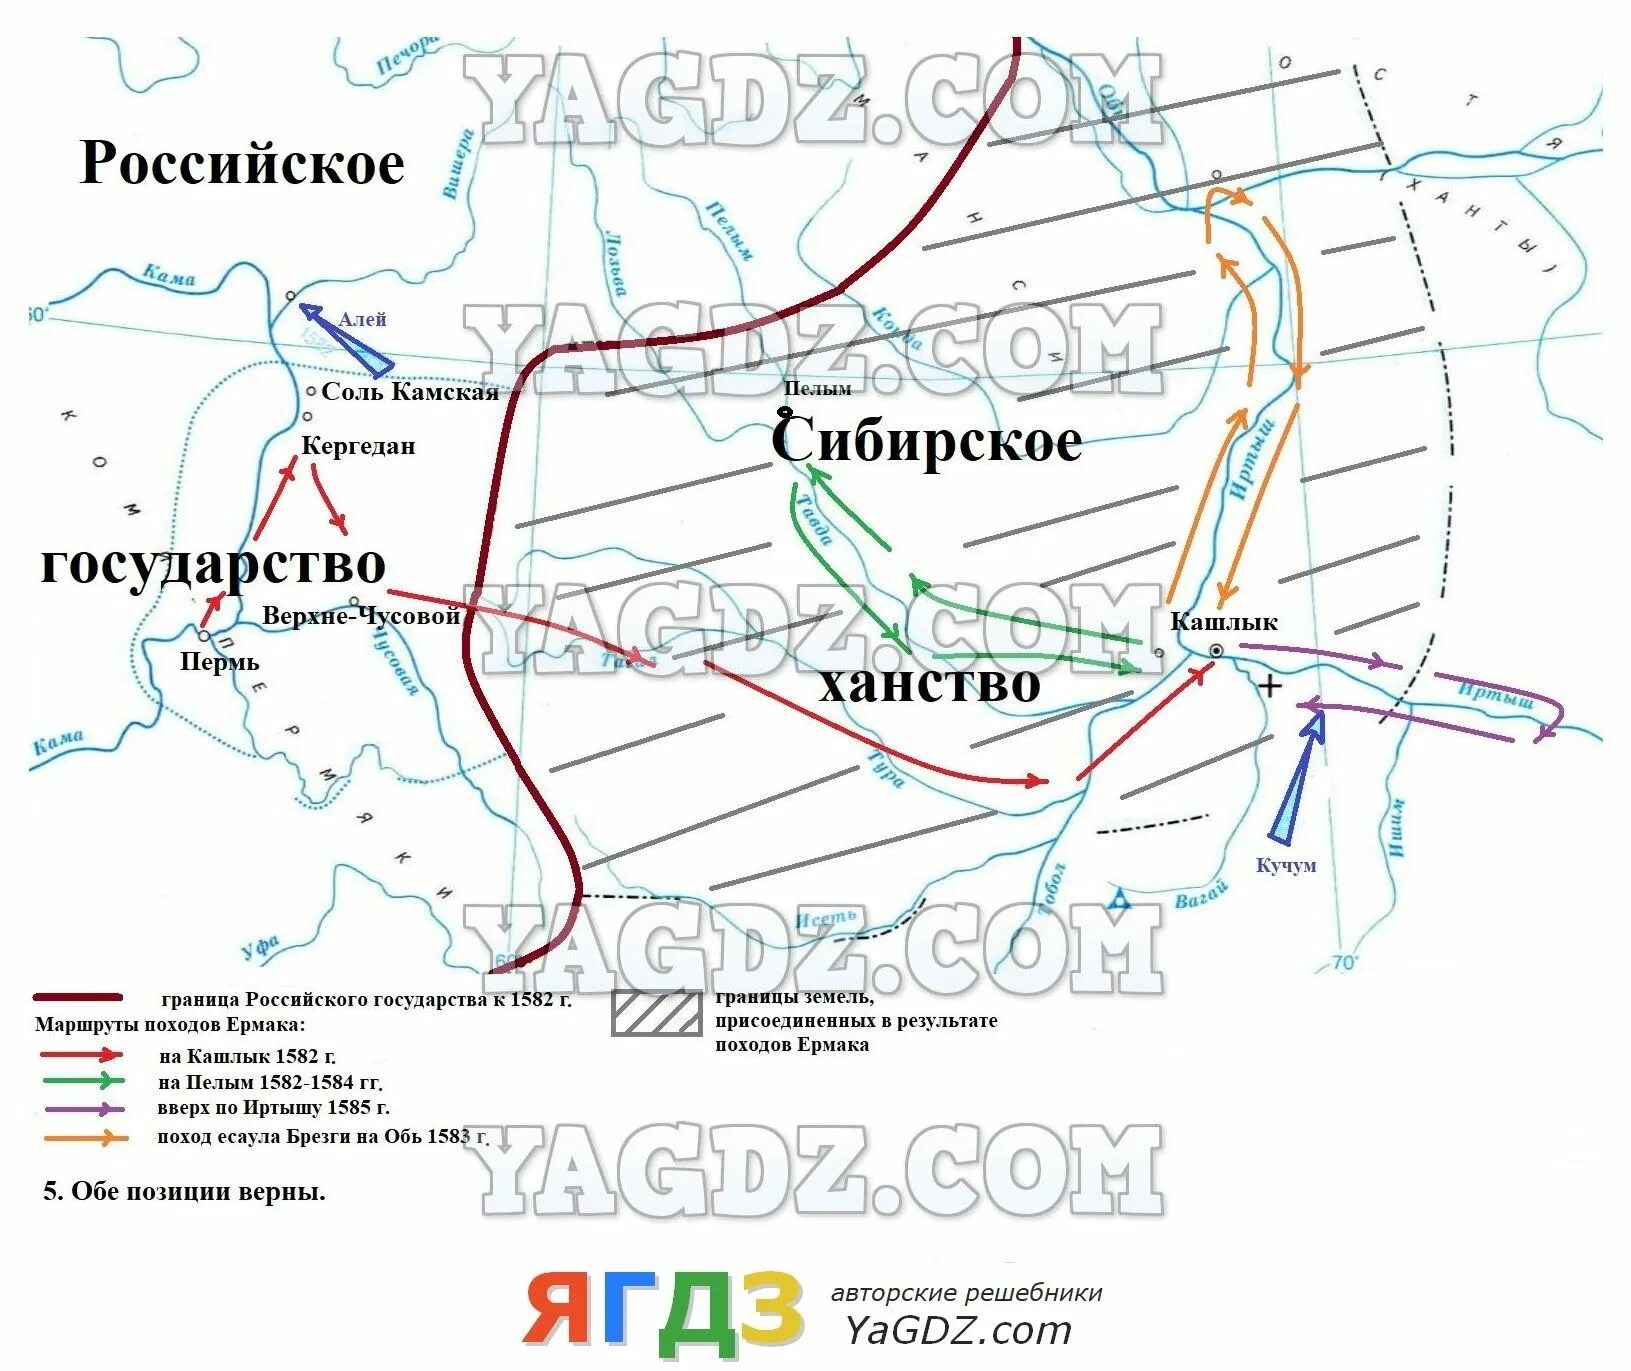 Карта поход Ермака в Сибирь в 1582-1585 гг. Контурная карта поход Ермака в Сибирь в 1582-1585. Карта поход Ермака в Сибирь 1581. Поды Ермака в Сибирь в1582—1585. Поход ермака карта контурная